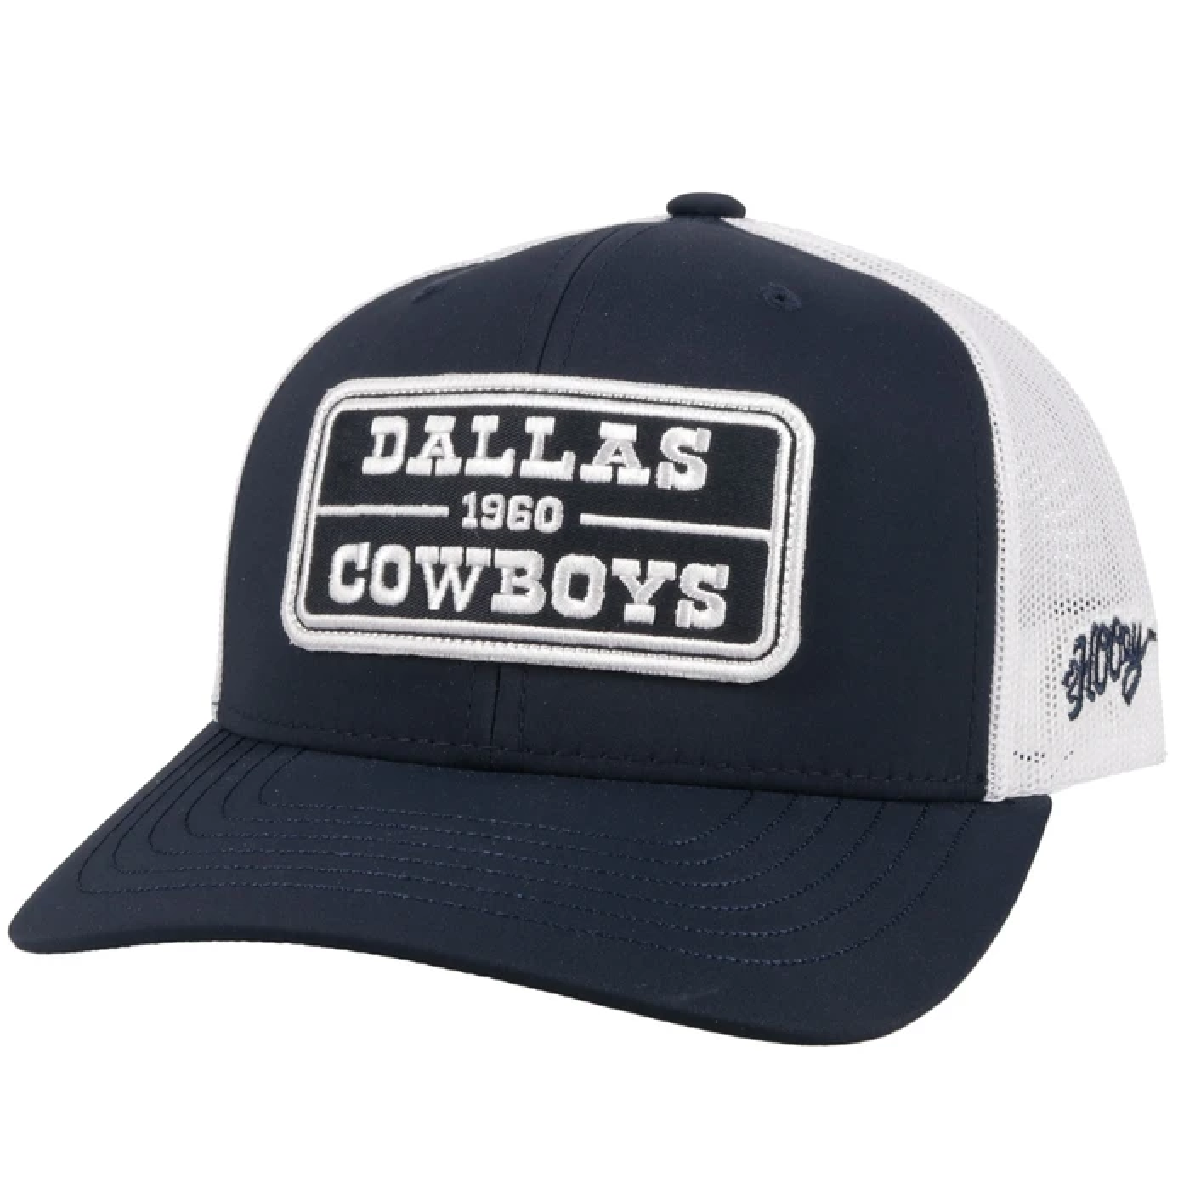 Dallas Cowboys - Navy & Whie Snapback